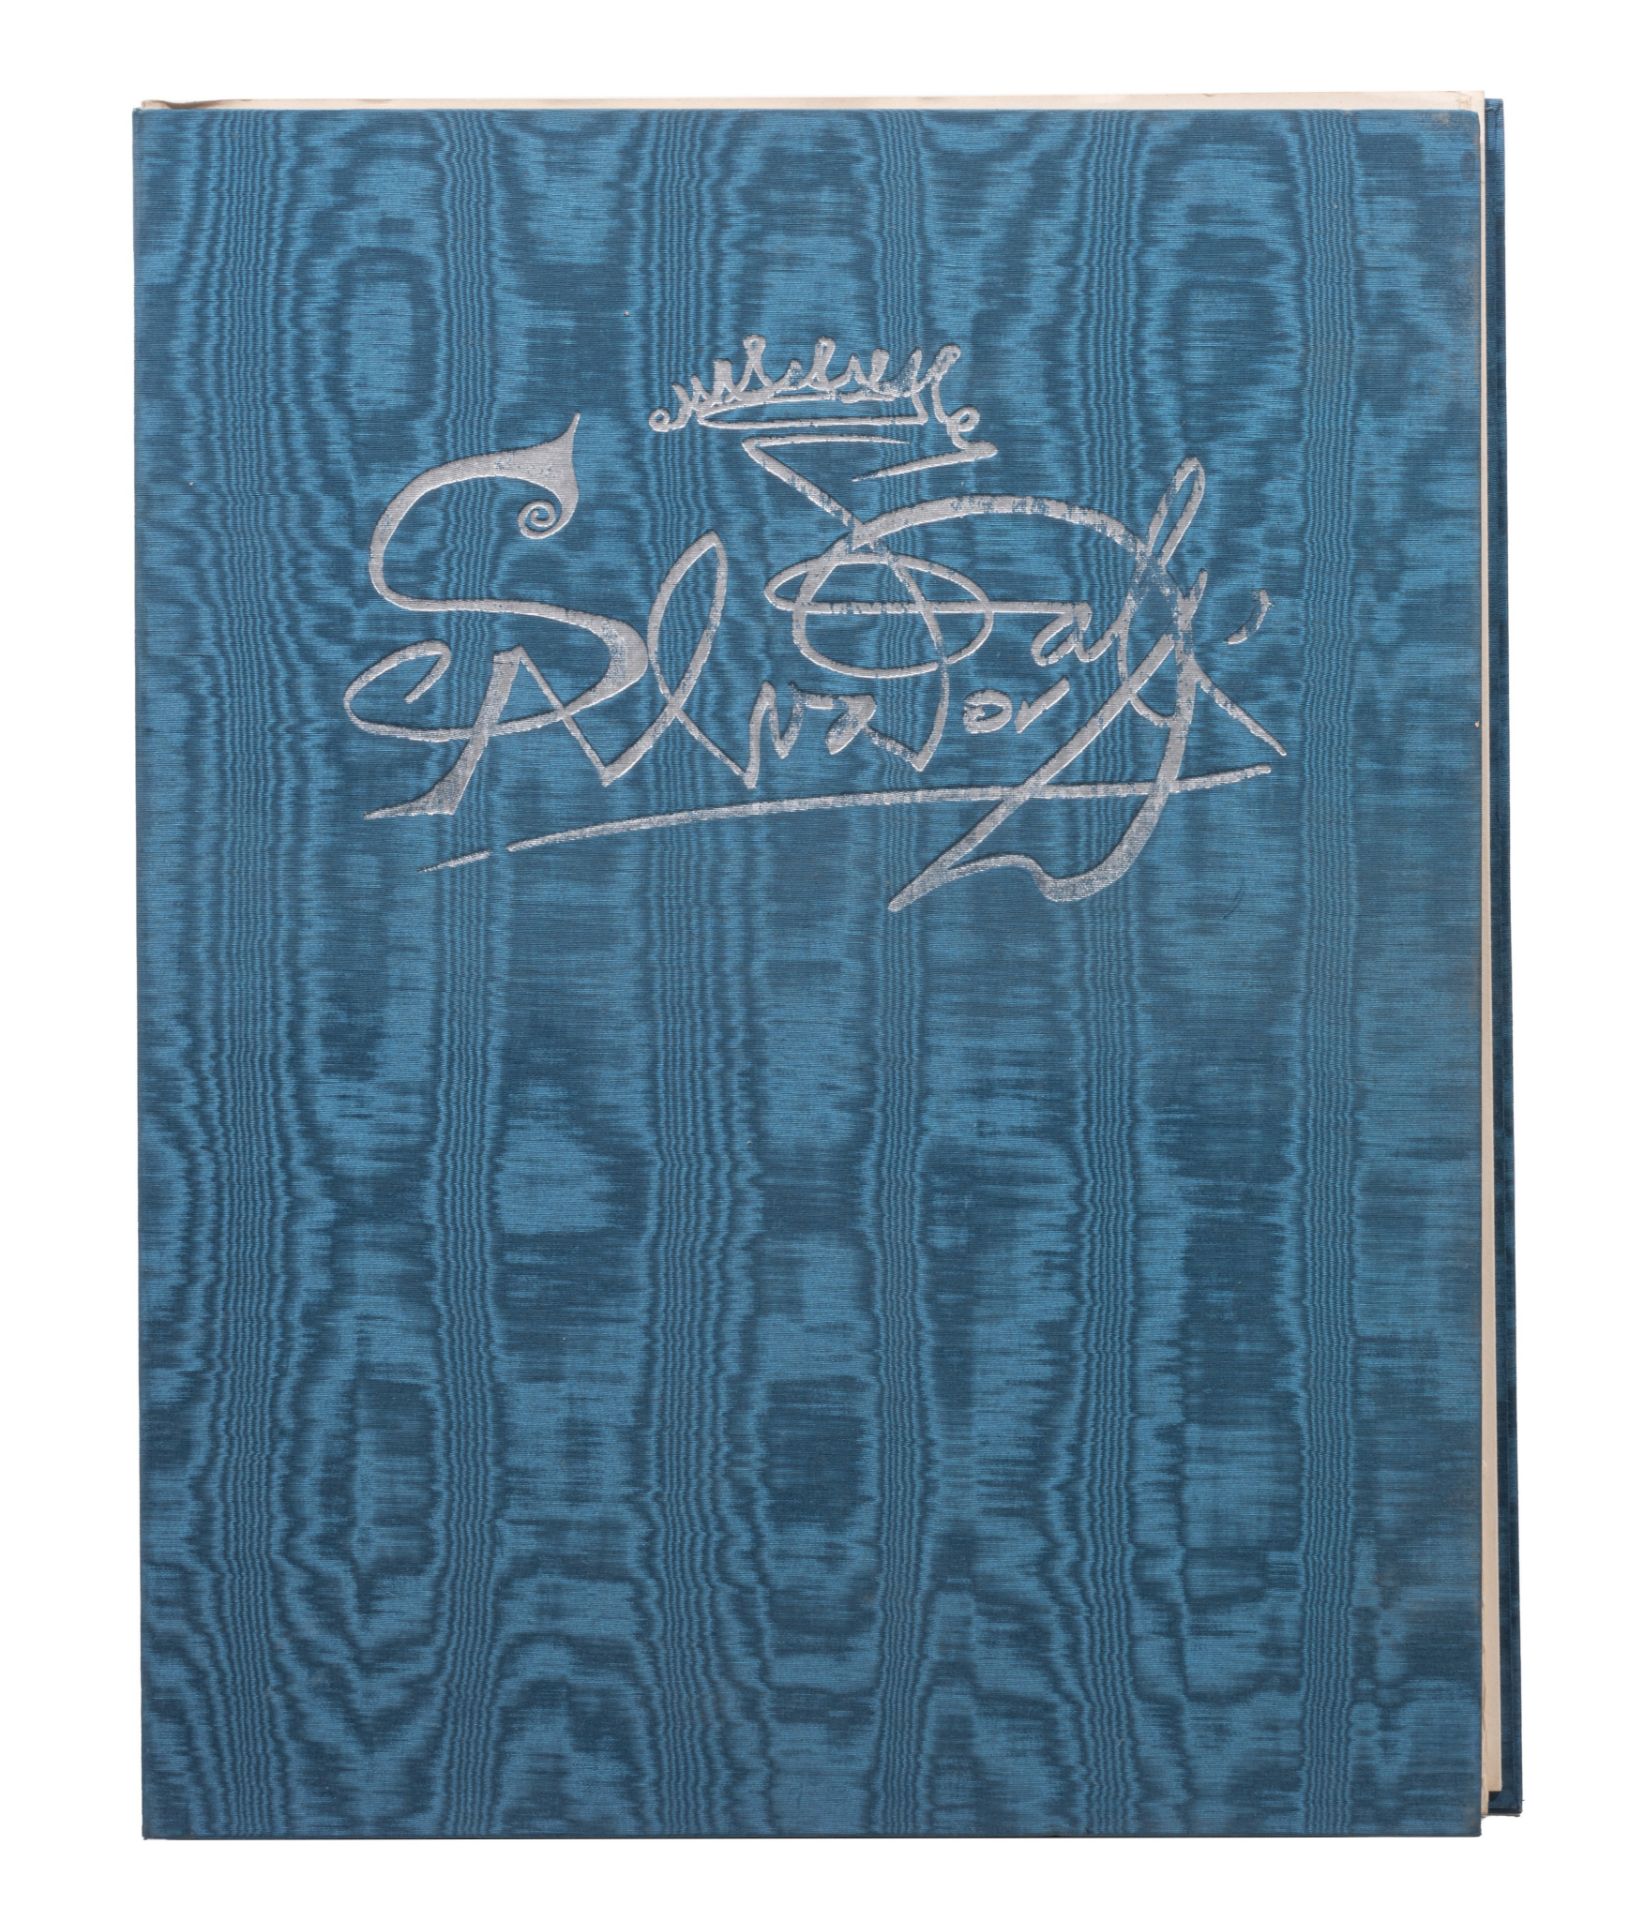 Salvador Dali (1904-1989), 'Les douze tribus d'Isra'l', 1973, ten colour etchings on Arches paper, N - Bild 2 aus 17